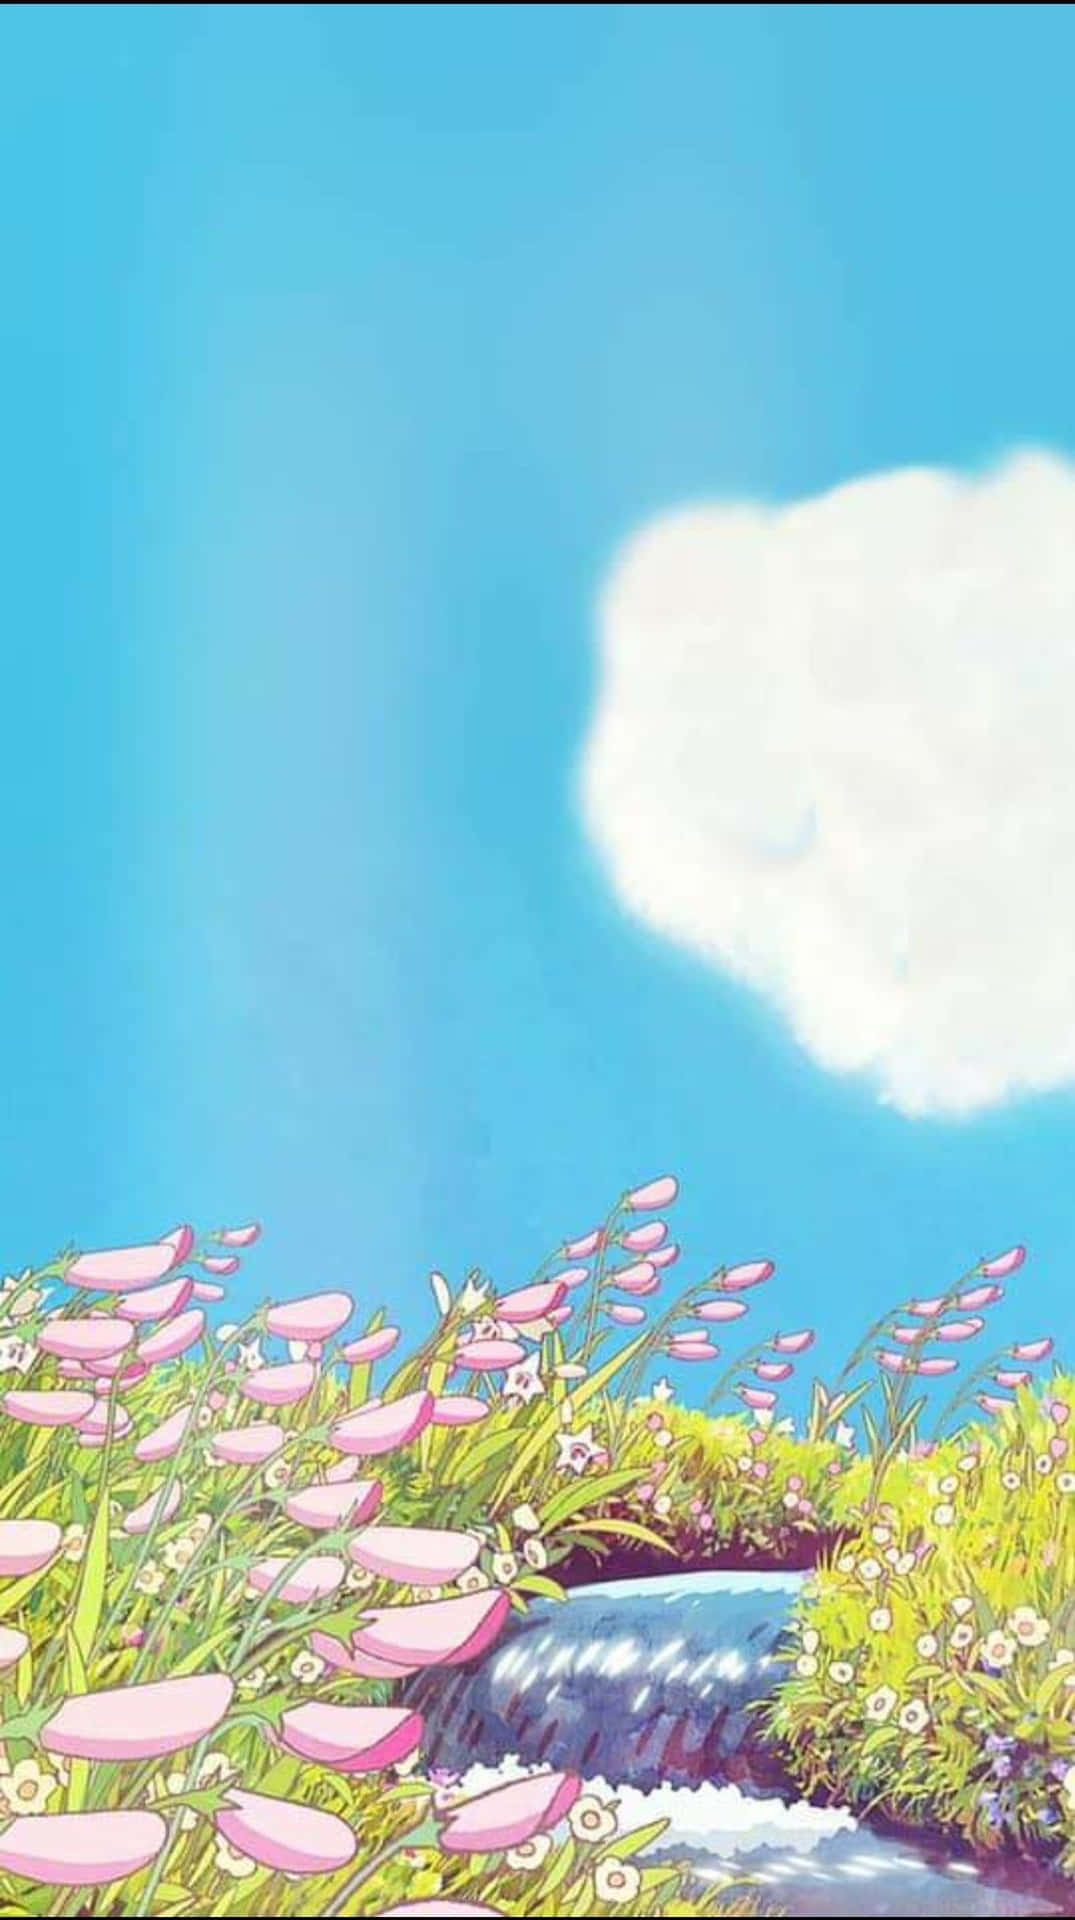 Impresionantenaturaleza Inspirada En La Animación De Ghibli. Fondo de pantalla